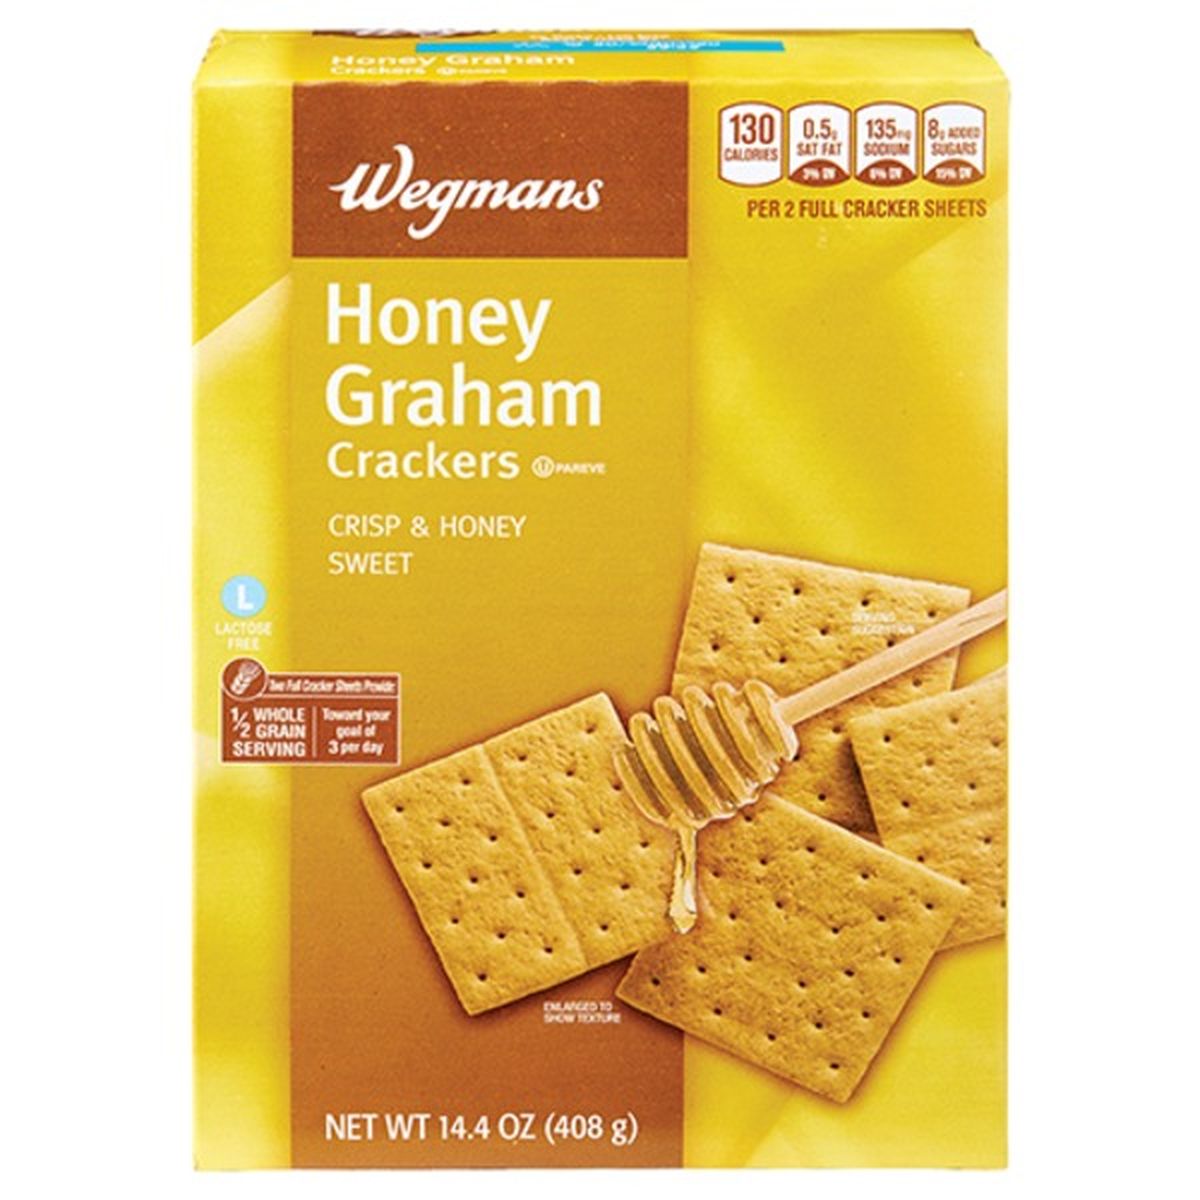 Calories in Wegmans Honey Graham Crackers